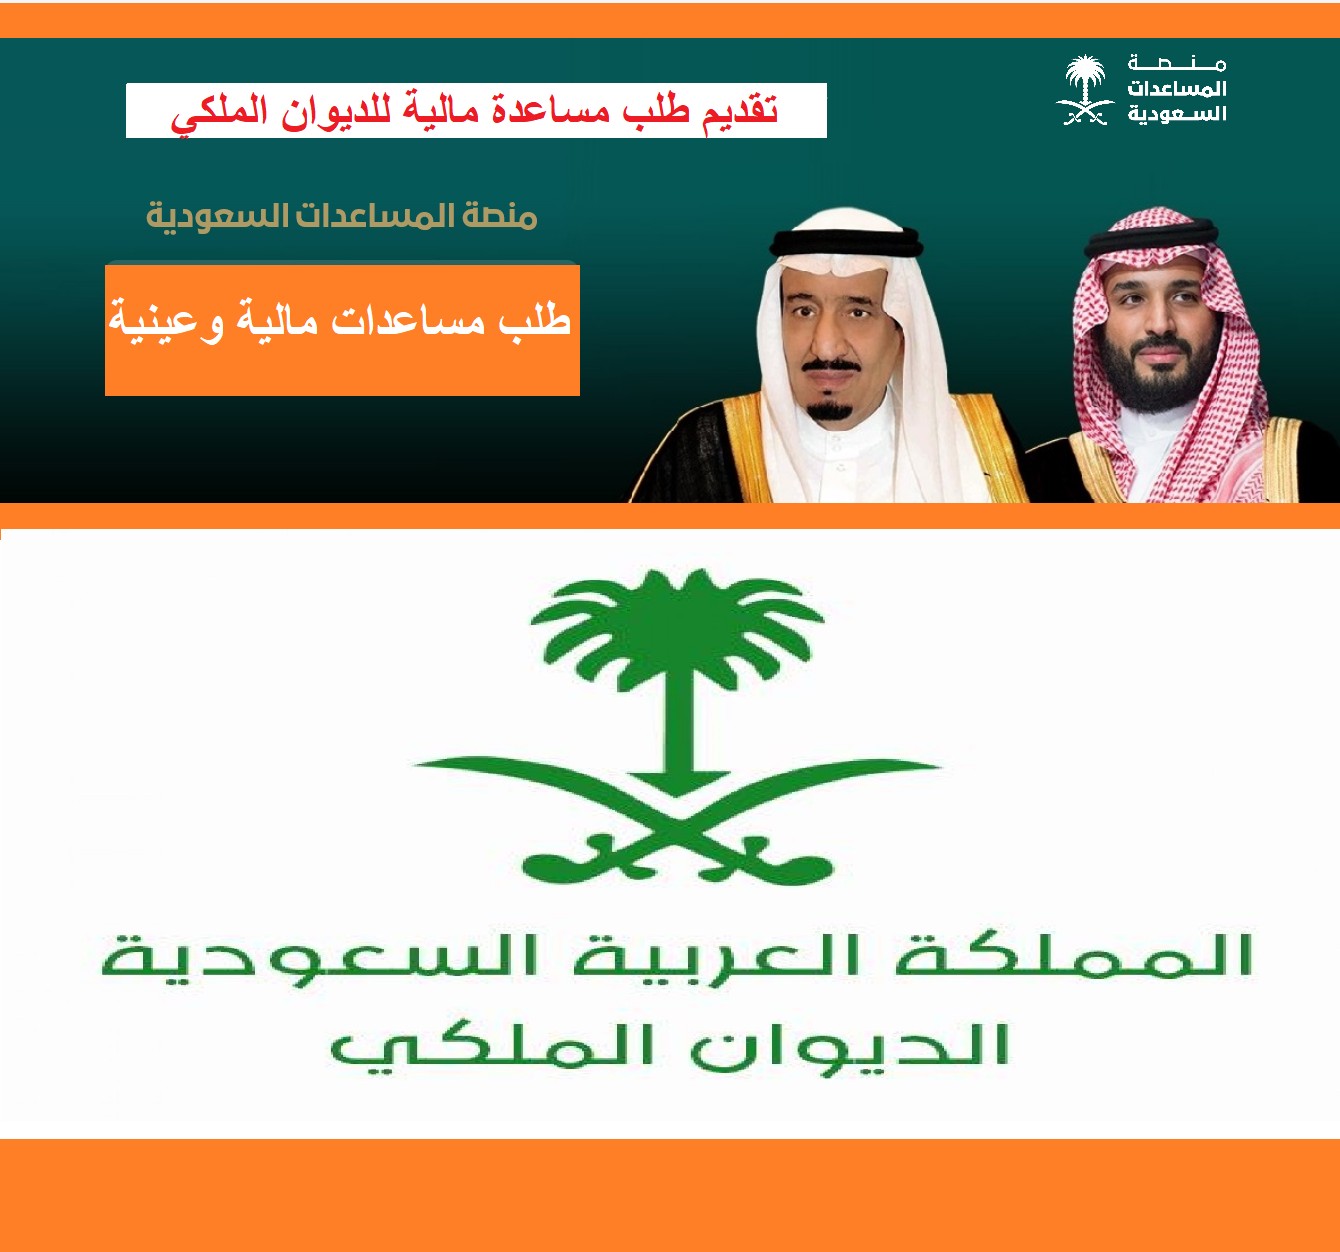 عربي ودولي  “مساعدات وإعفاءات” الديوان الملكي السعودي مساعدة مُحتاج ومنح أراضى سكنية وسداد ديون